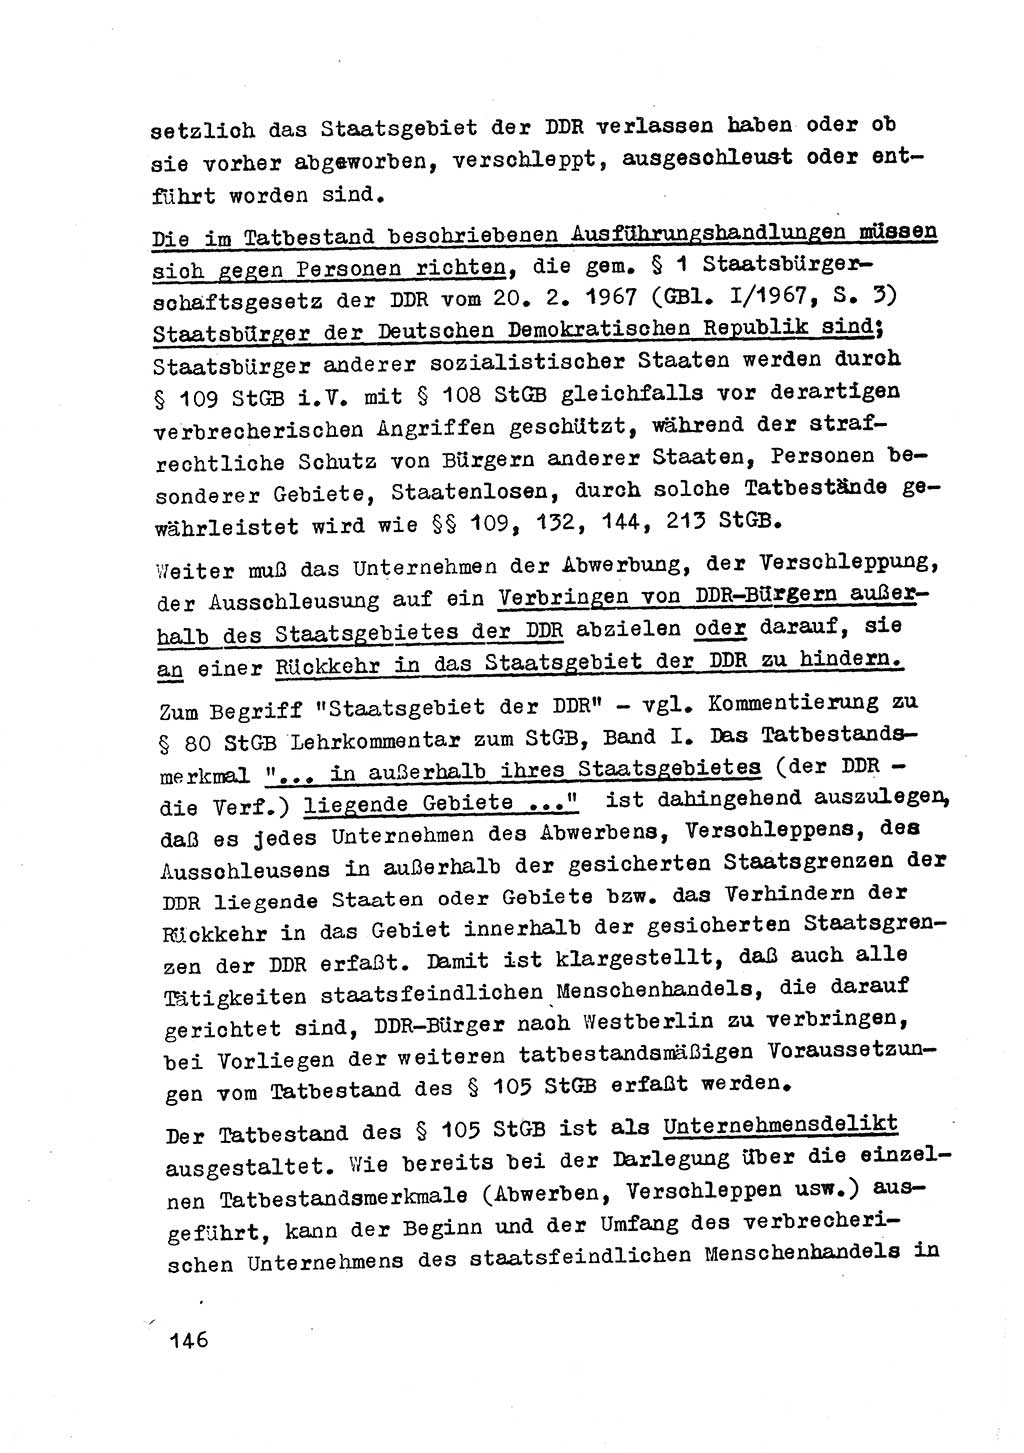 Strafrecht der DDR (Deutsche Demokratische Republik), Besonderer Teil, Lehrmaterial, Heft 2 1969, Seite 146 (Strafr. DDR BT Lehrmat. H. 2 1969, S. 146)